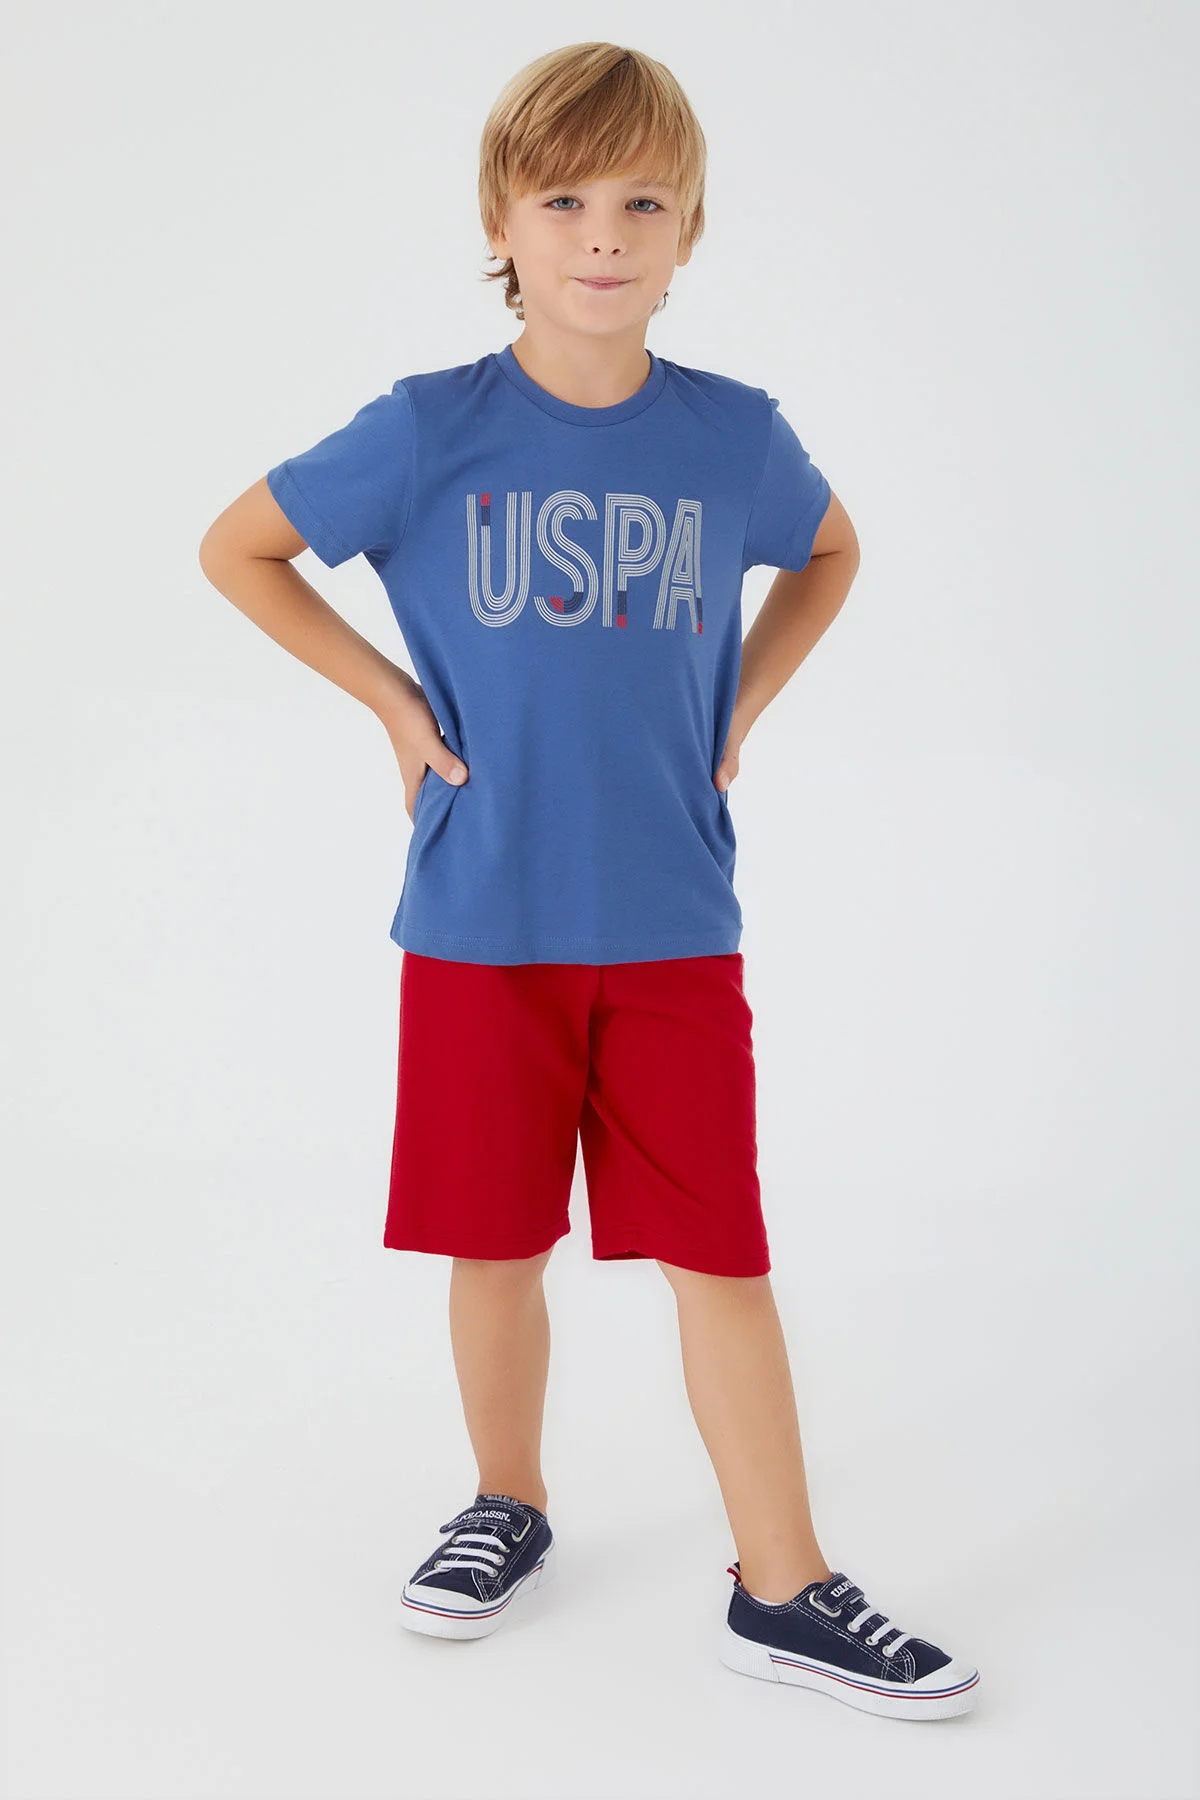 U.S. Polo Erkek Çocuk Bermuda Takım 1334-4 Mavi